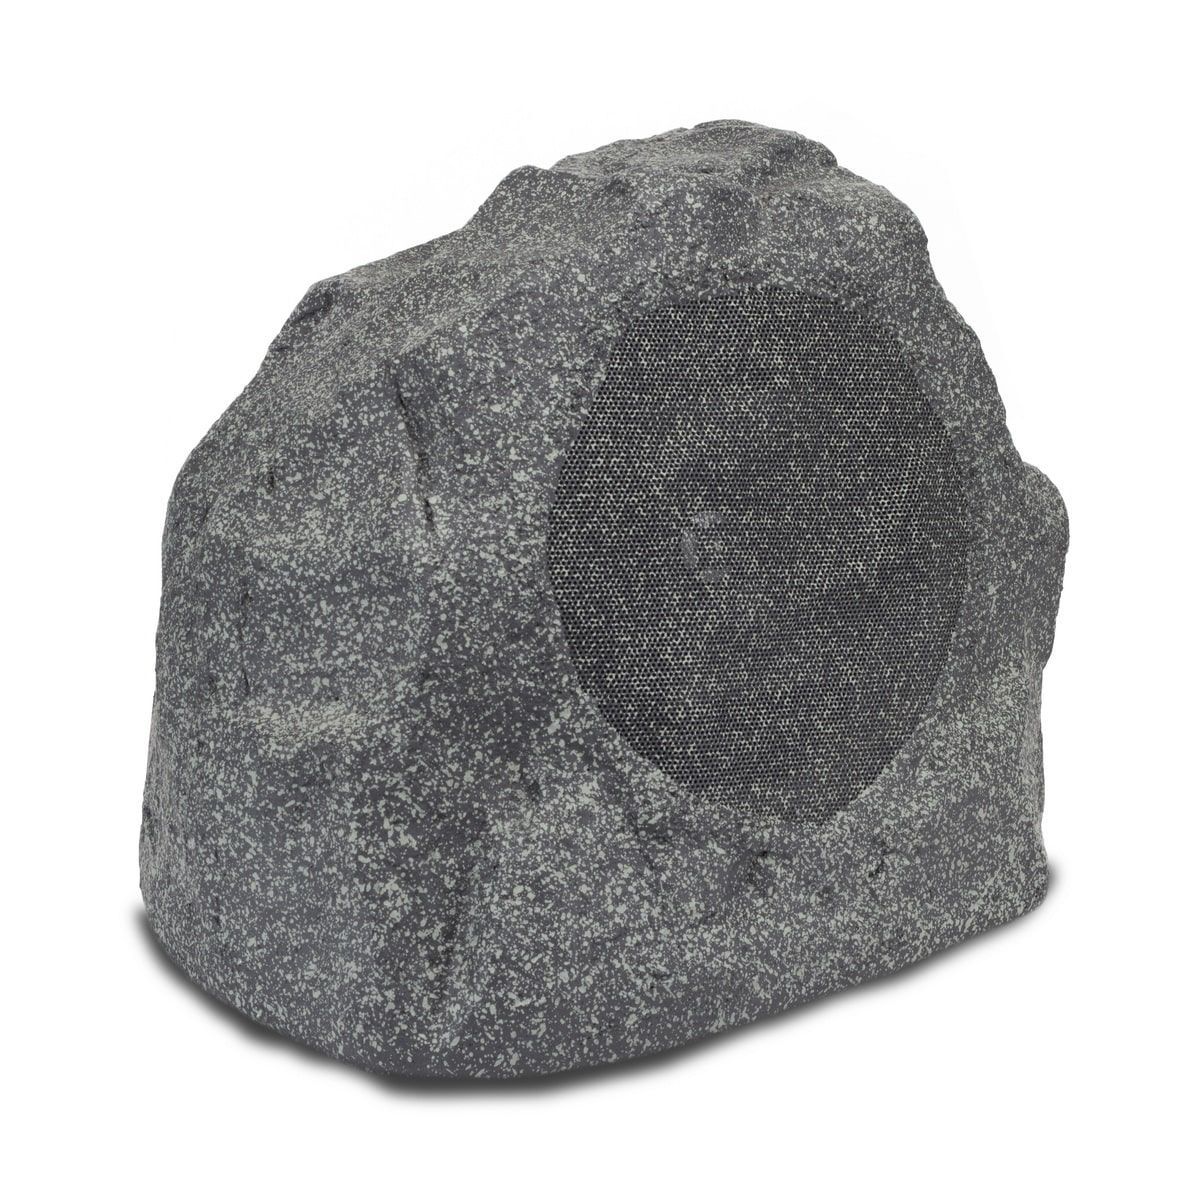 Картинка Всепогодная АС Klipsch PRO-650T-RK Granite - лучшая цена, доставка по России. Фото N2